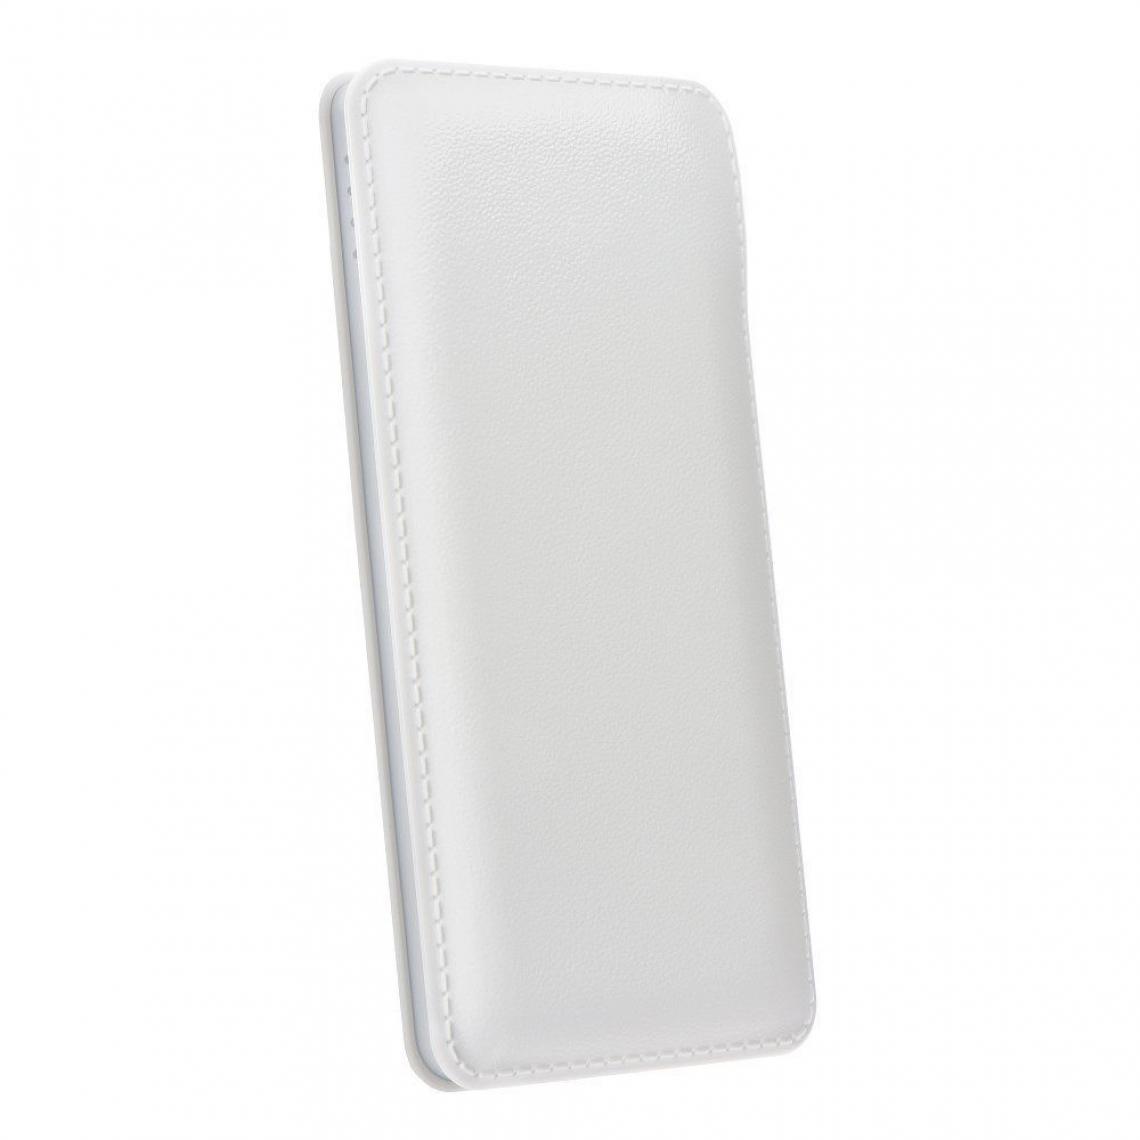 Ozzzo - Chargeur batterie externe 20000 mAh powerbank ozzzo blanc pour Samsung Galaxy S21 5G SM-G991B - Autres accessoires smartphone